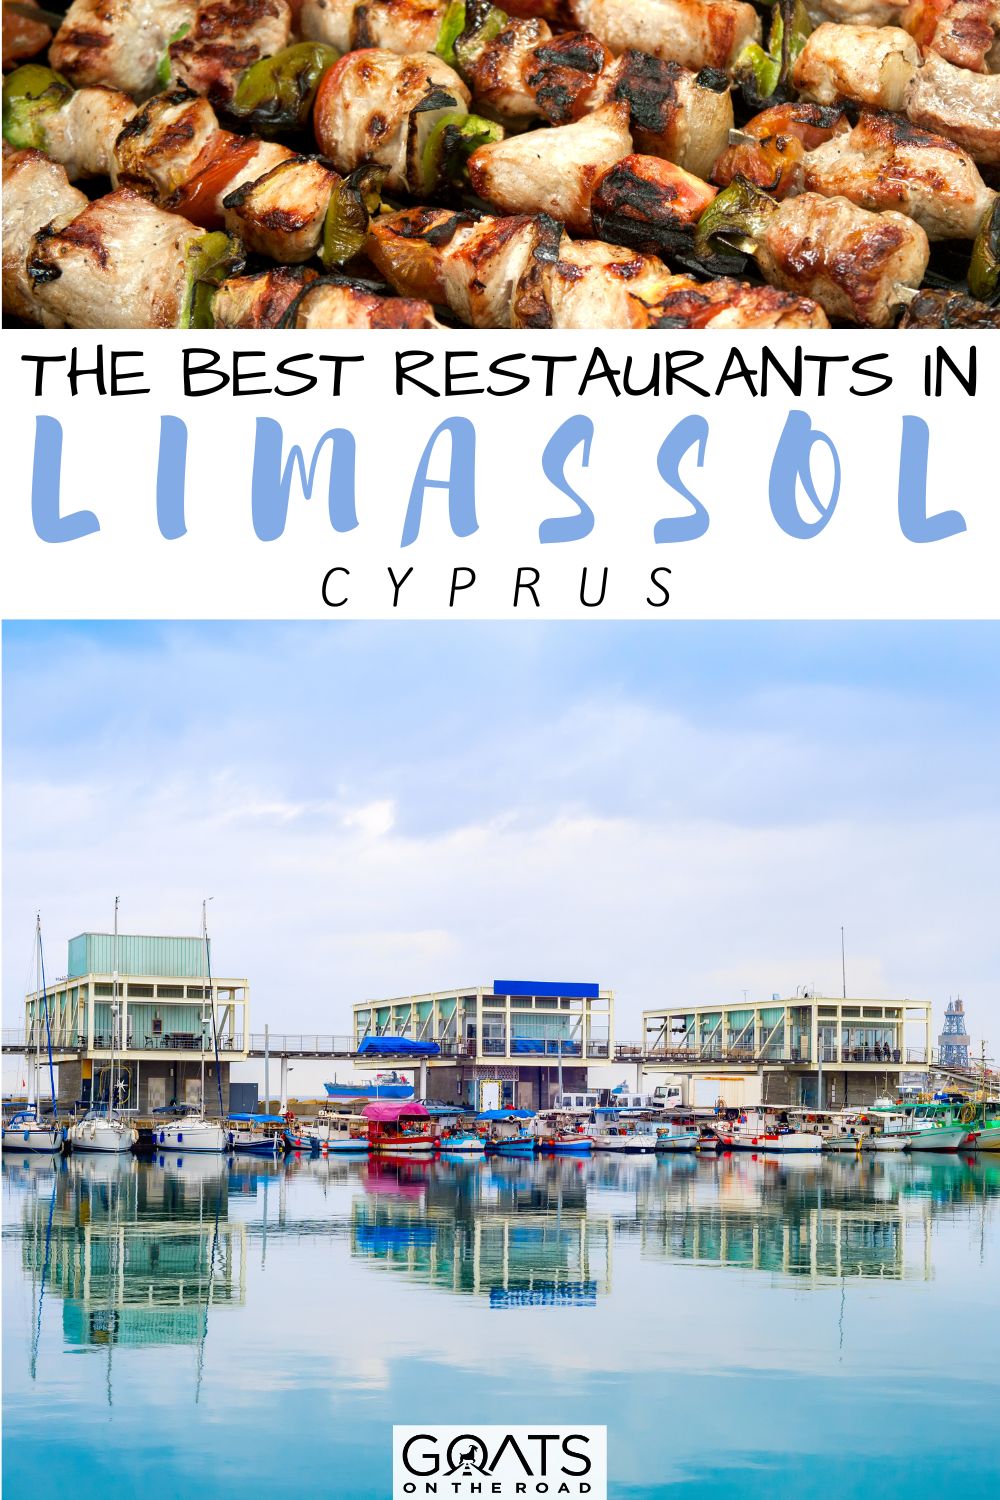 “The Best Restaurants In Limassol, Cyprus